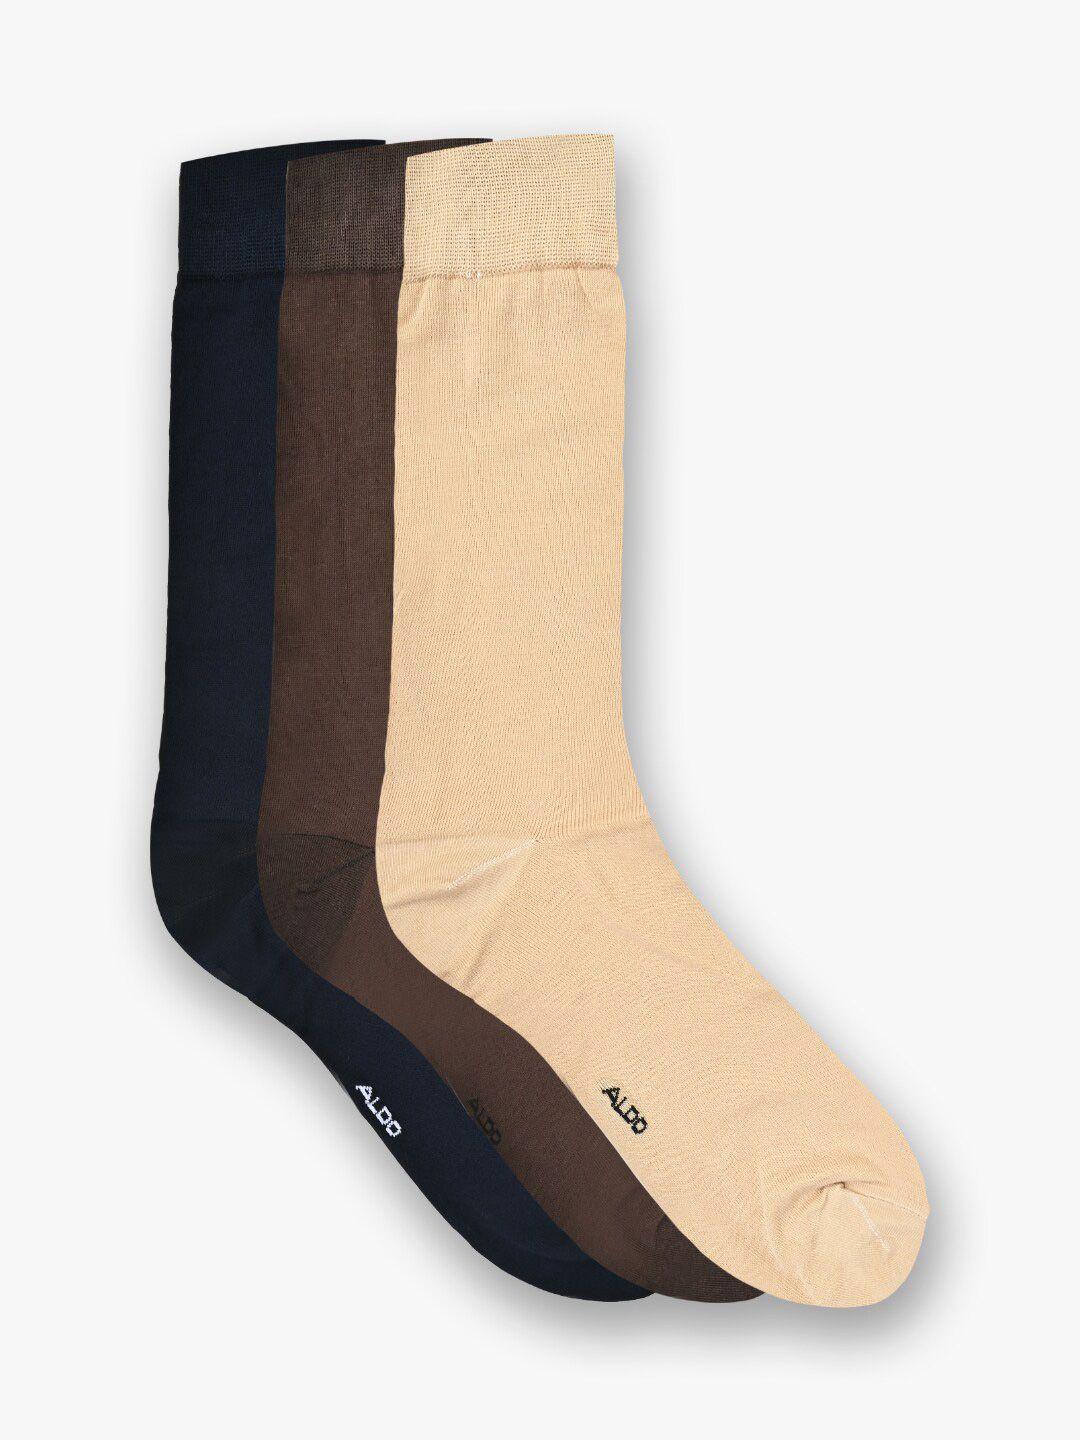 aldo-men-pack-of-3-cotton-calf-length-socks